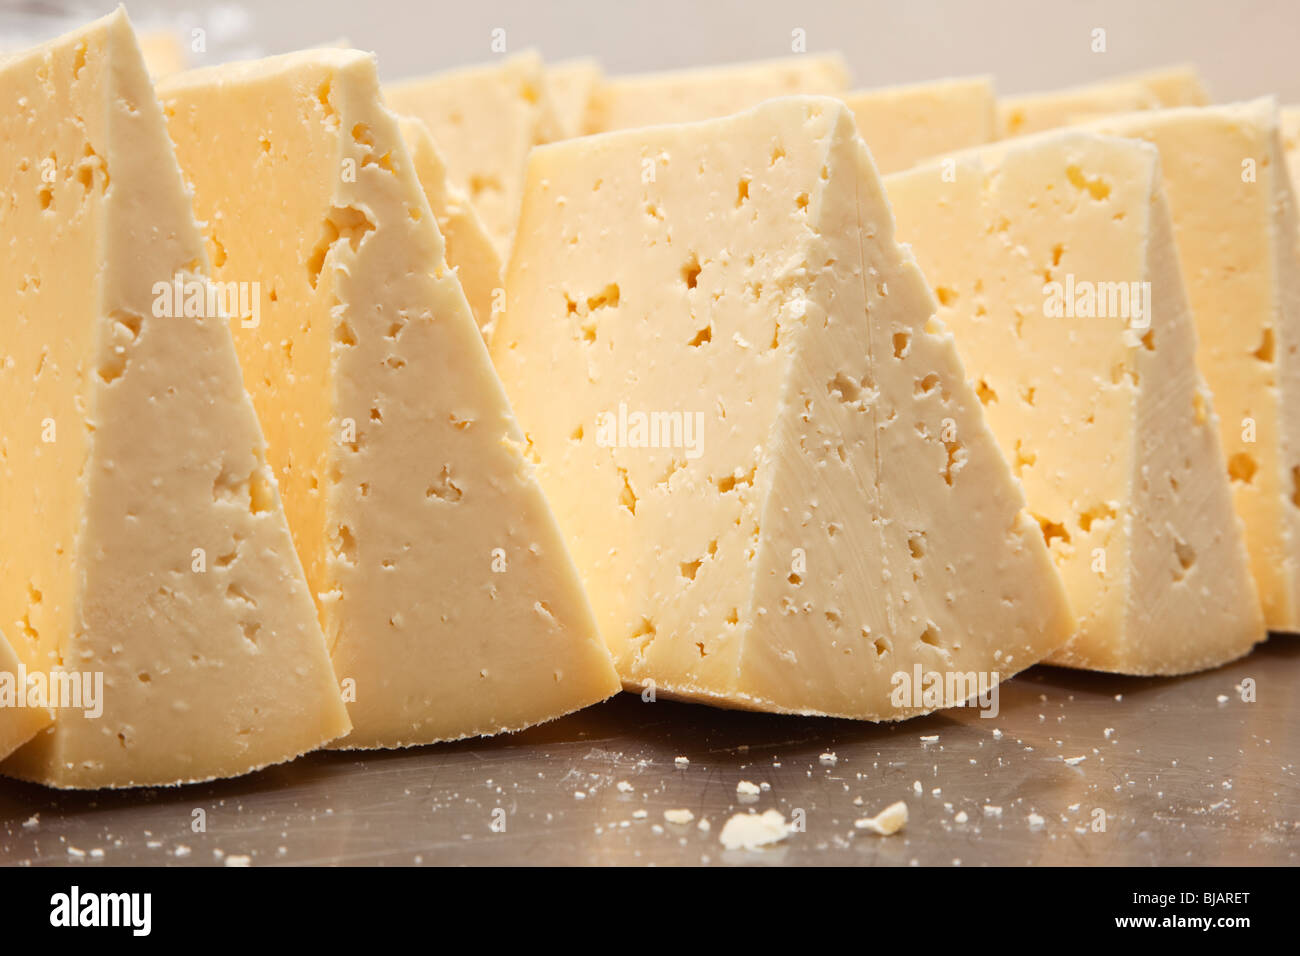 Près de beaucoup de morceaux de fromage dans une laiterie. Paysage Banque D'Images